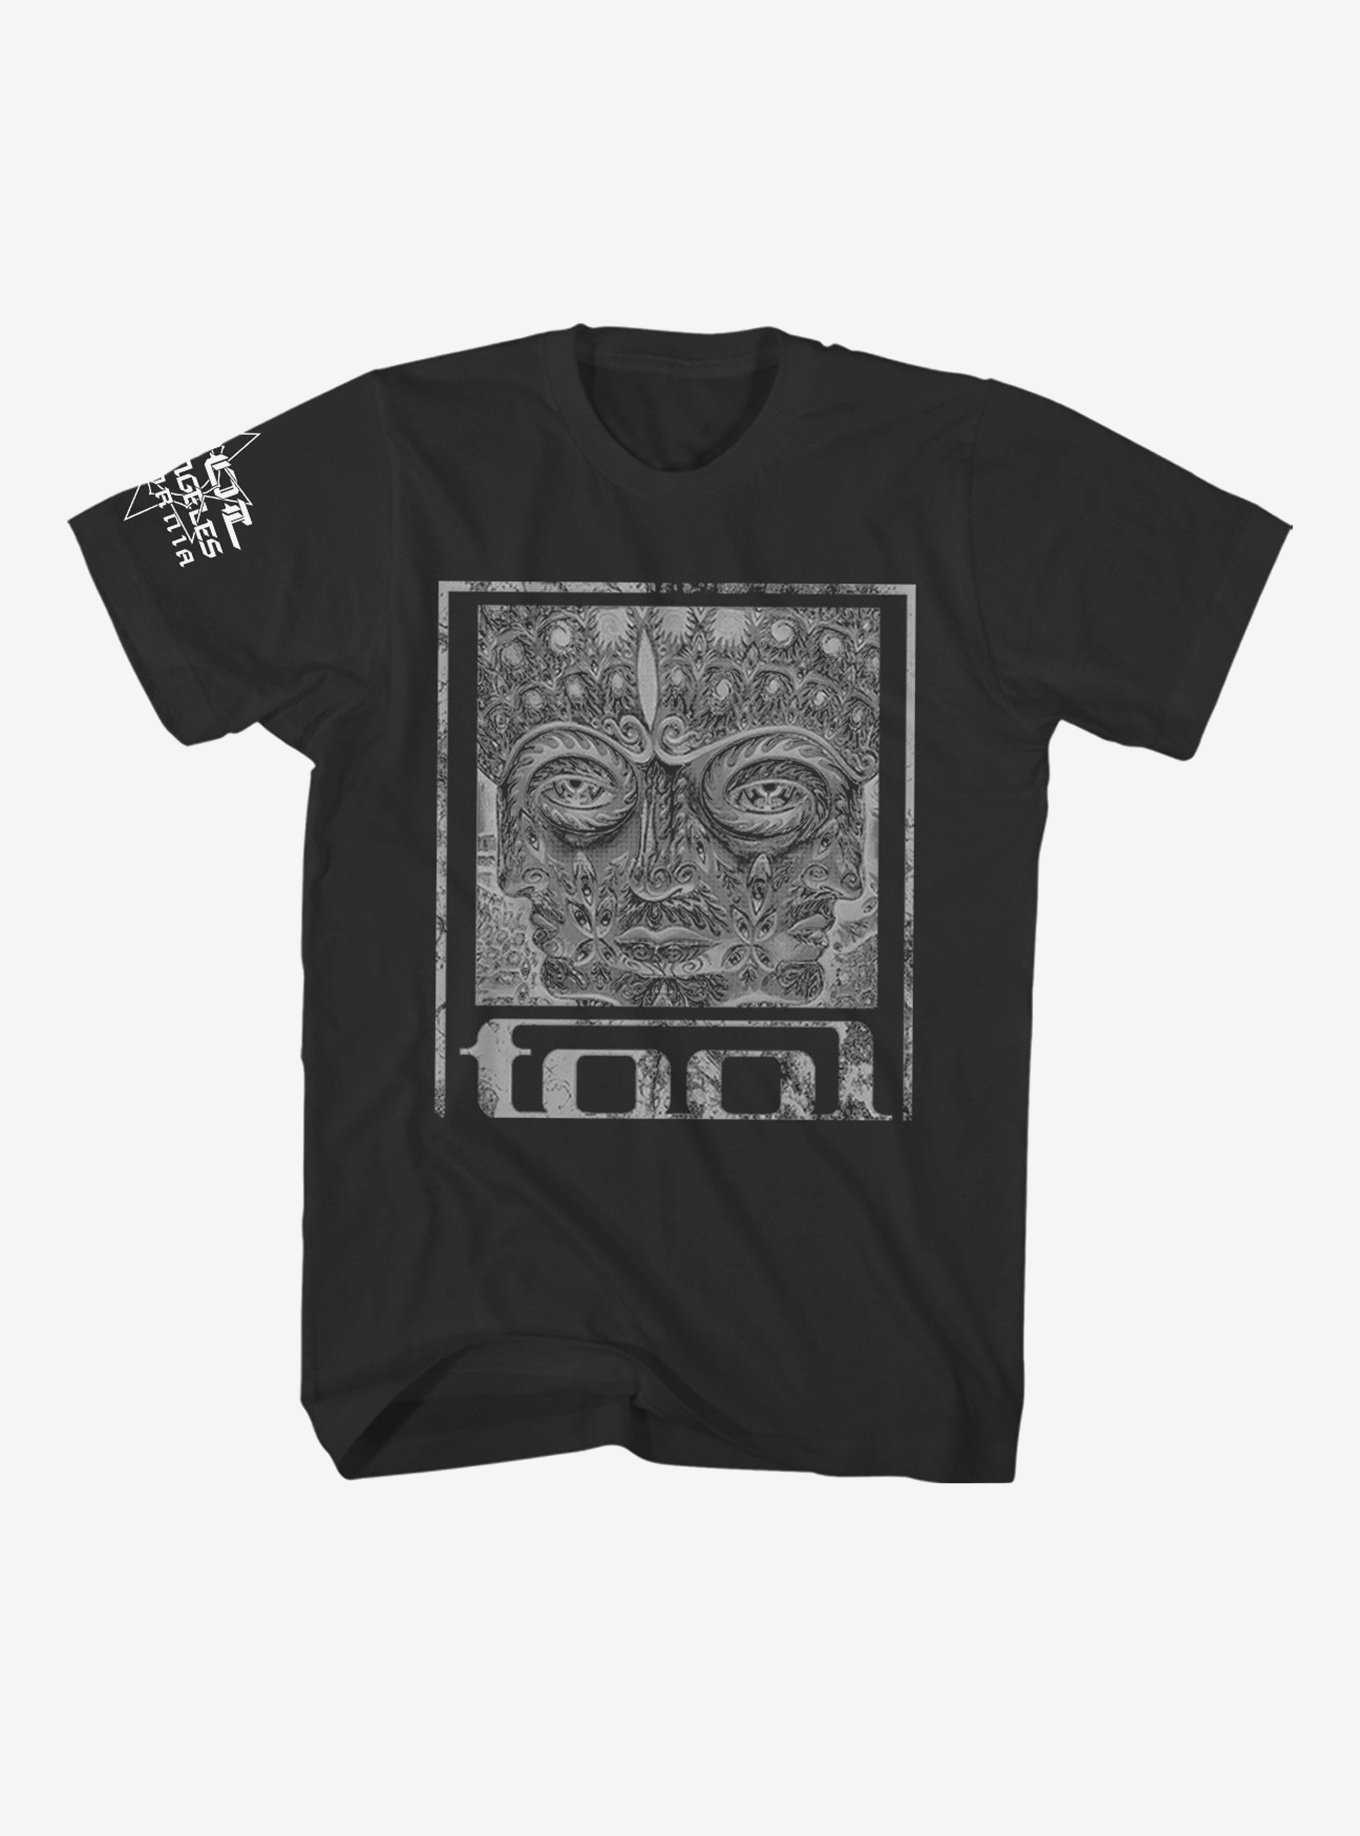 Tool 10,000 Days Face T-Shirt, , hi-res